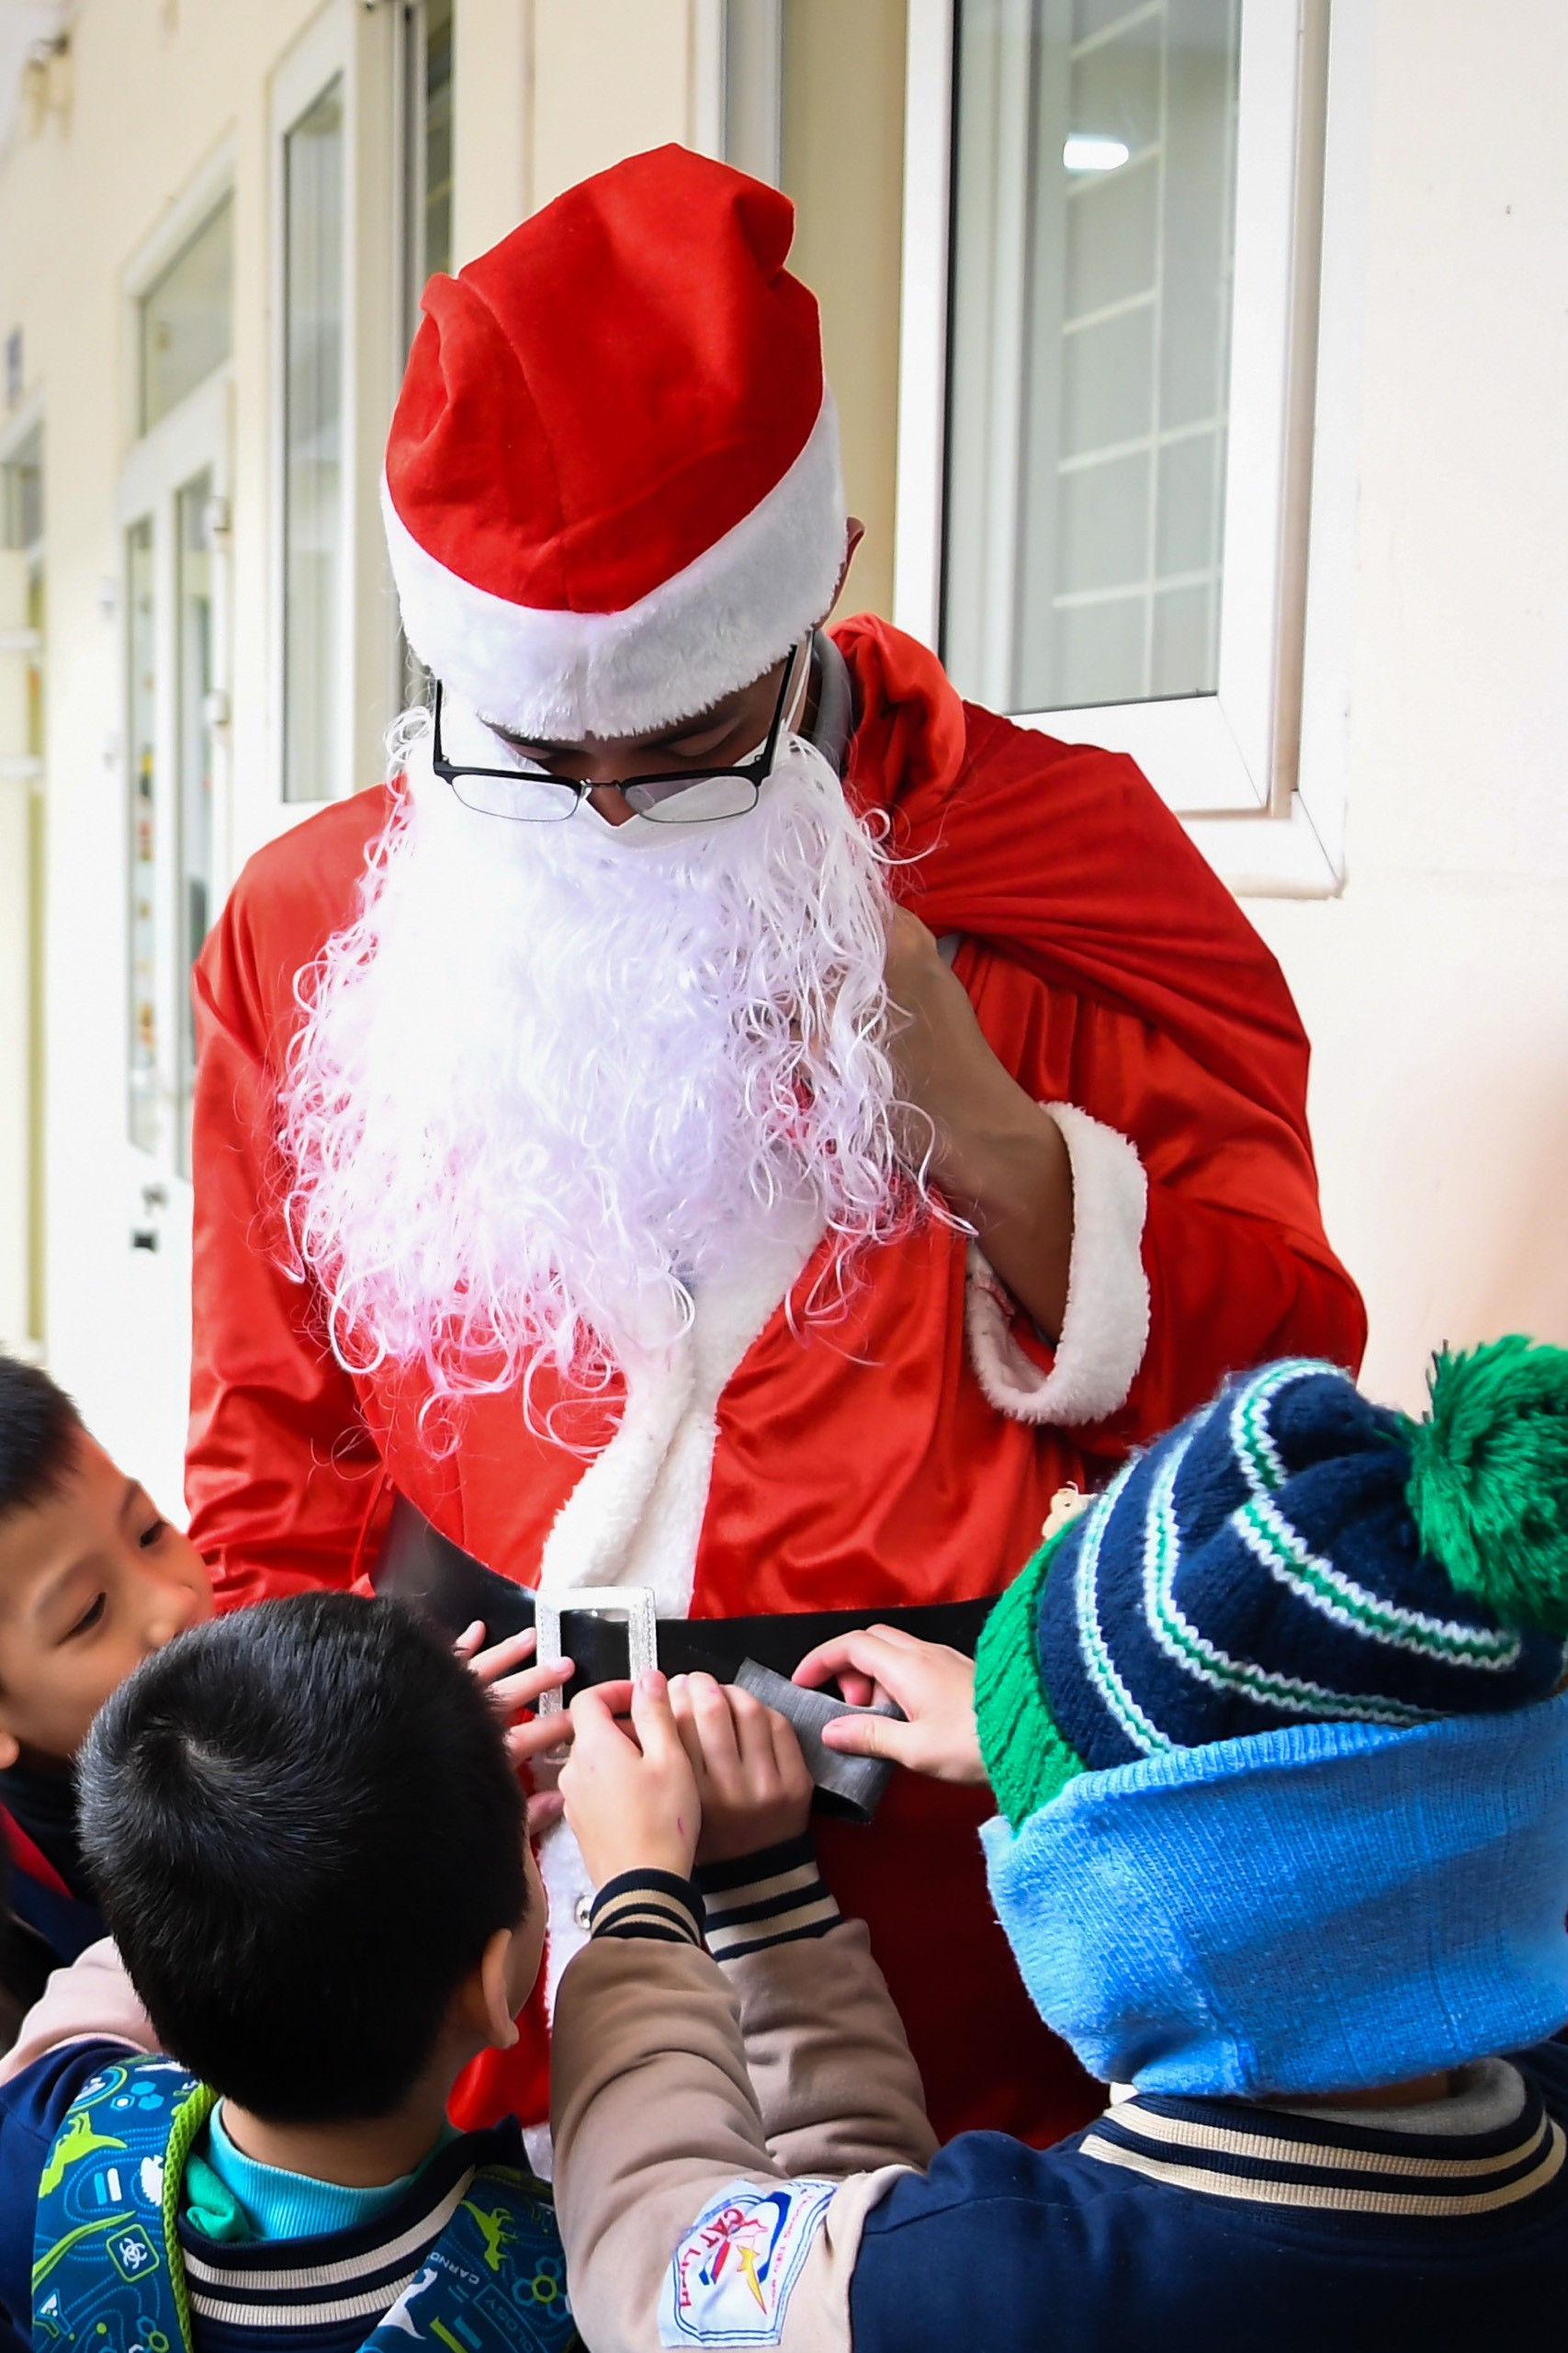 Ông già Noel lăng xăng tới các gia đình, trường học phát quà